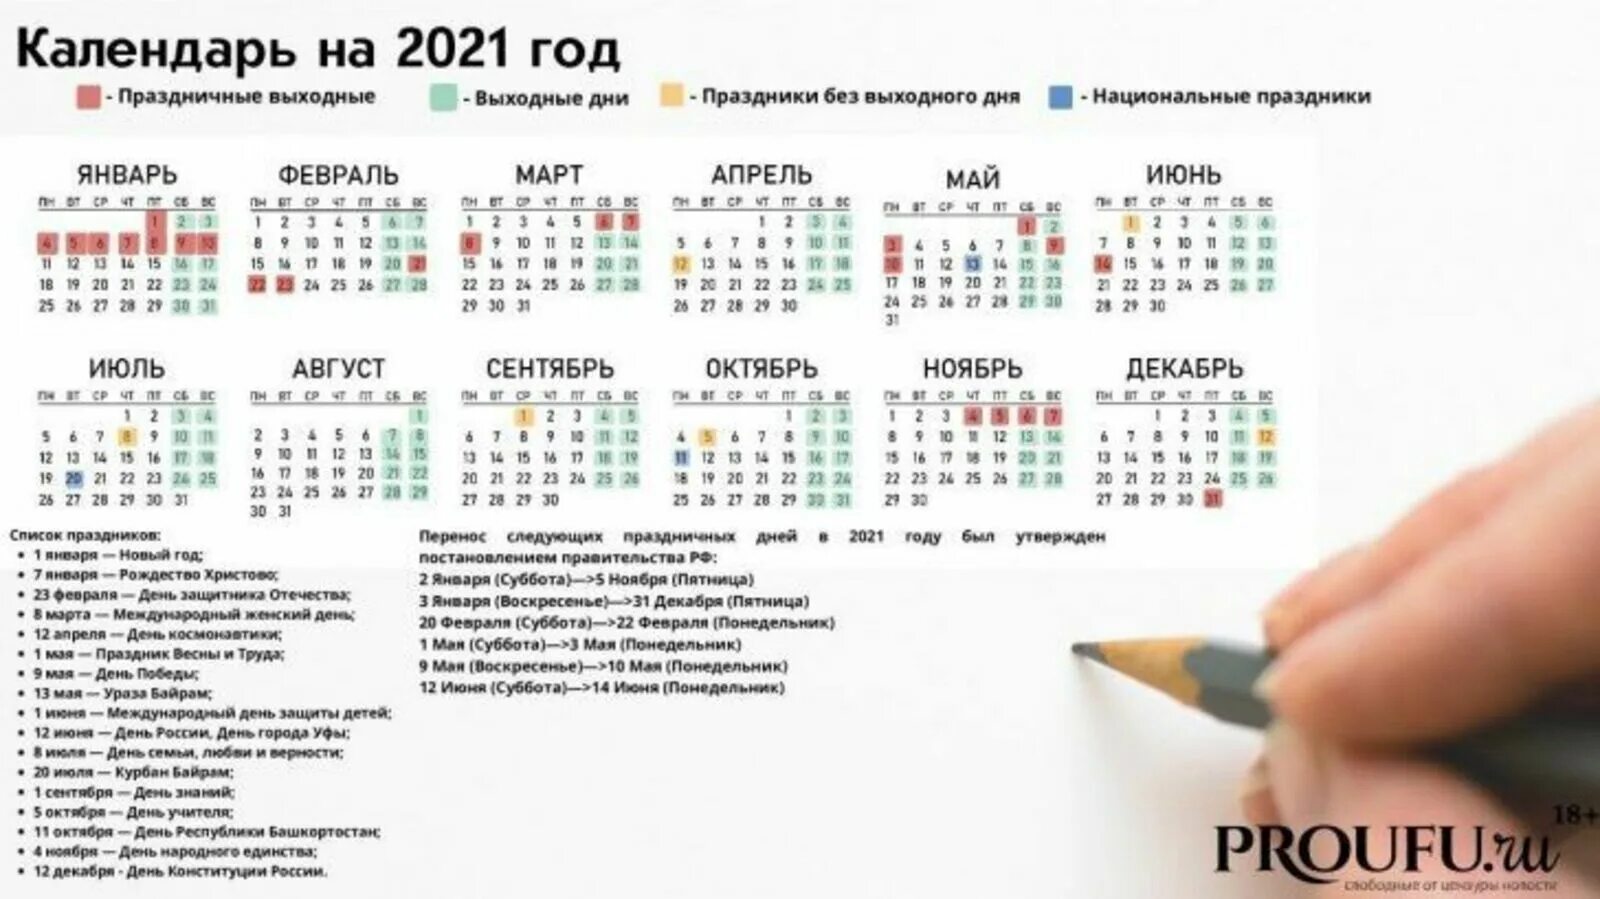 Сколько дней назад было 30 января. Календарь выходных и праздничных дней на 2021 год в Башкирии. Праздничные дни в 2021 году в России календарь утвержденный. Праздники в Башкирии в 2021 году календарь. Выходные и праздничные дни в 2021 в Башкирии.